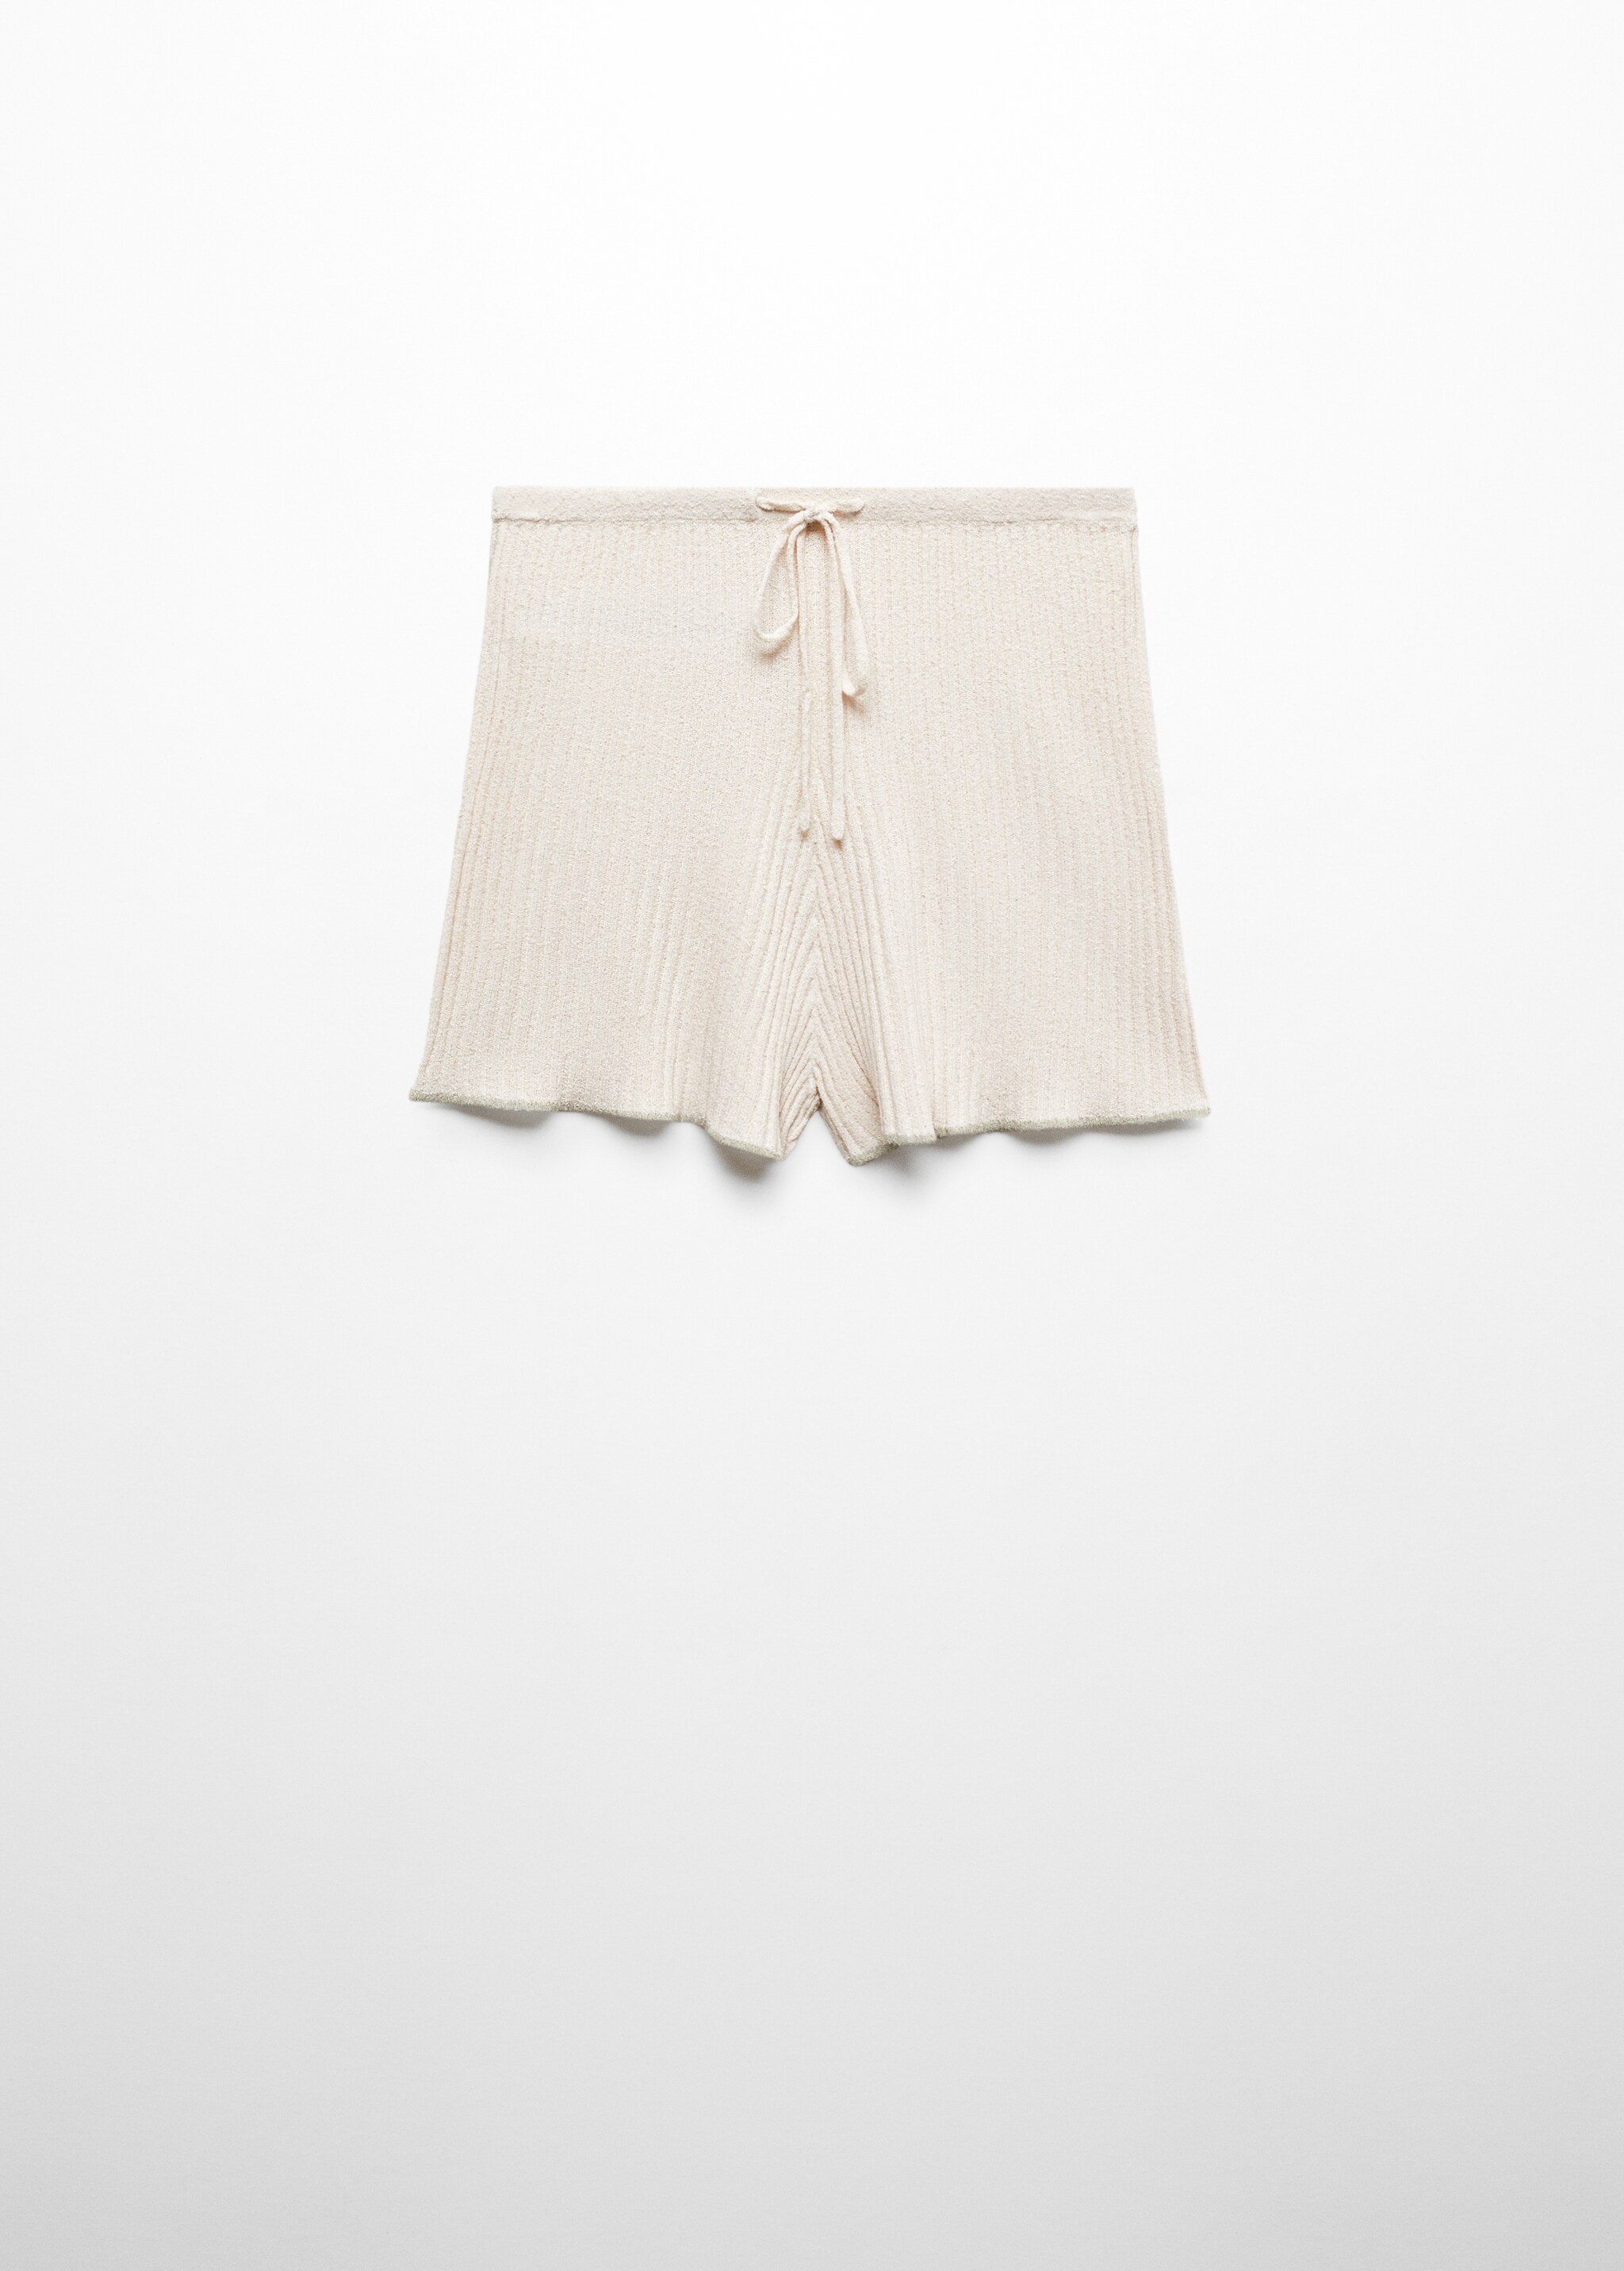 Пижамные шорты в рубчик - Изделие без модели